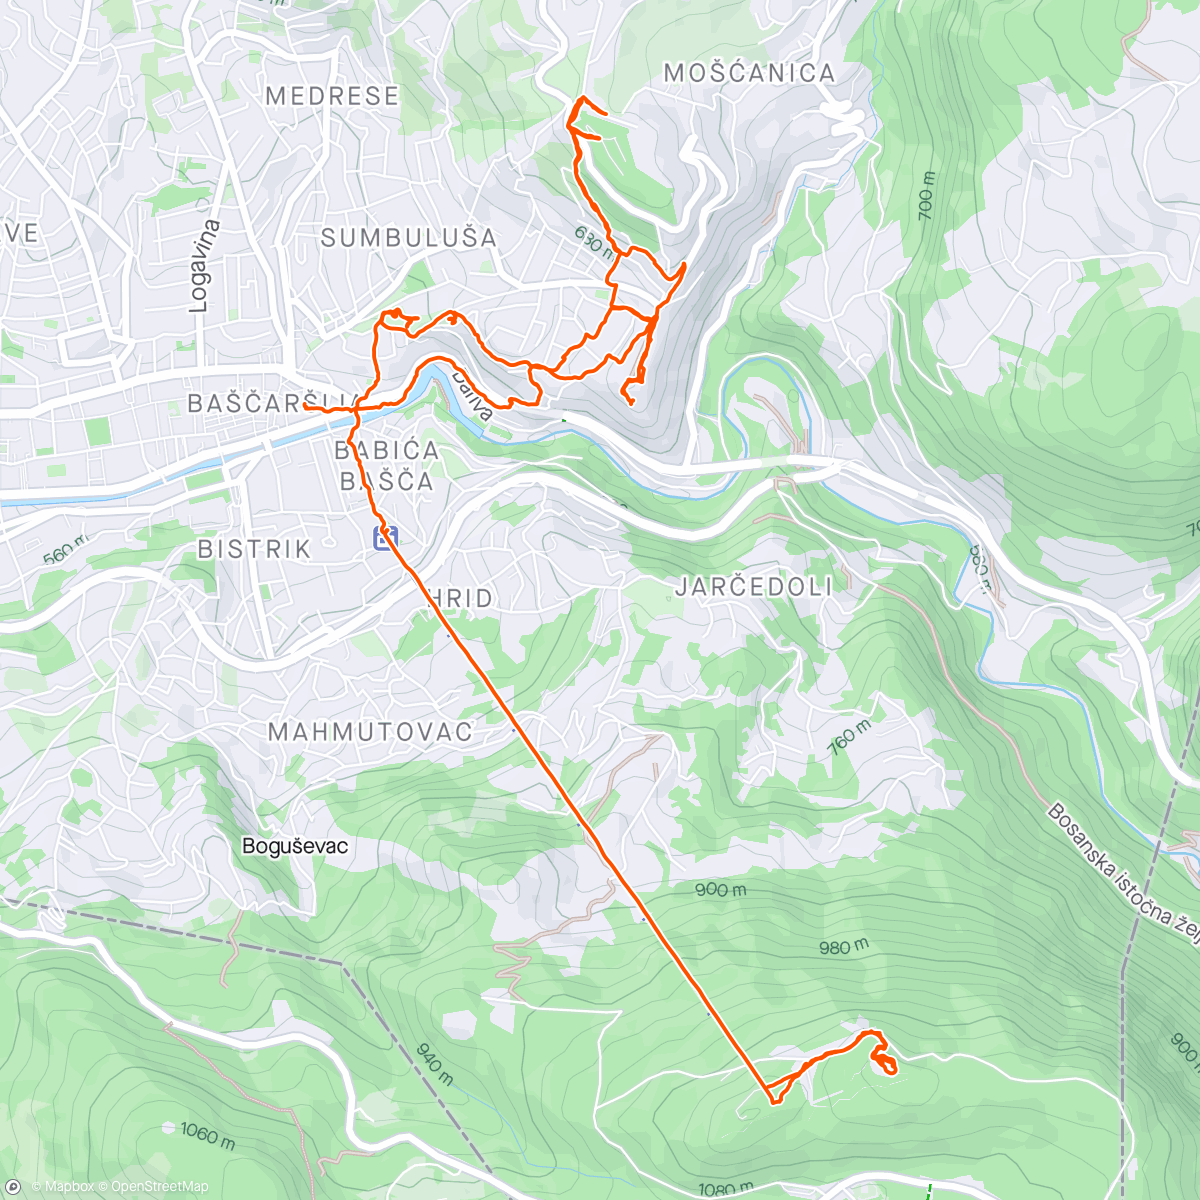 Mapa da atividade, Sarajevo